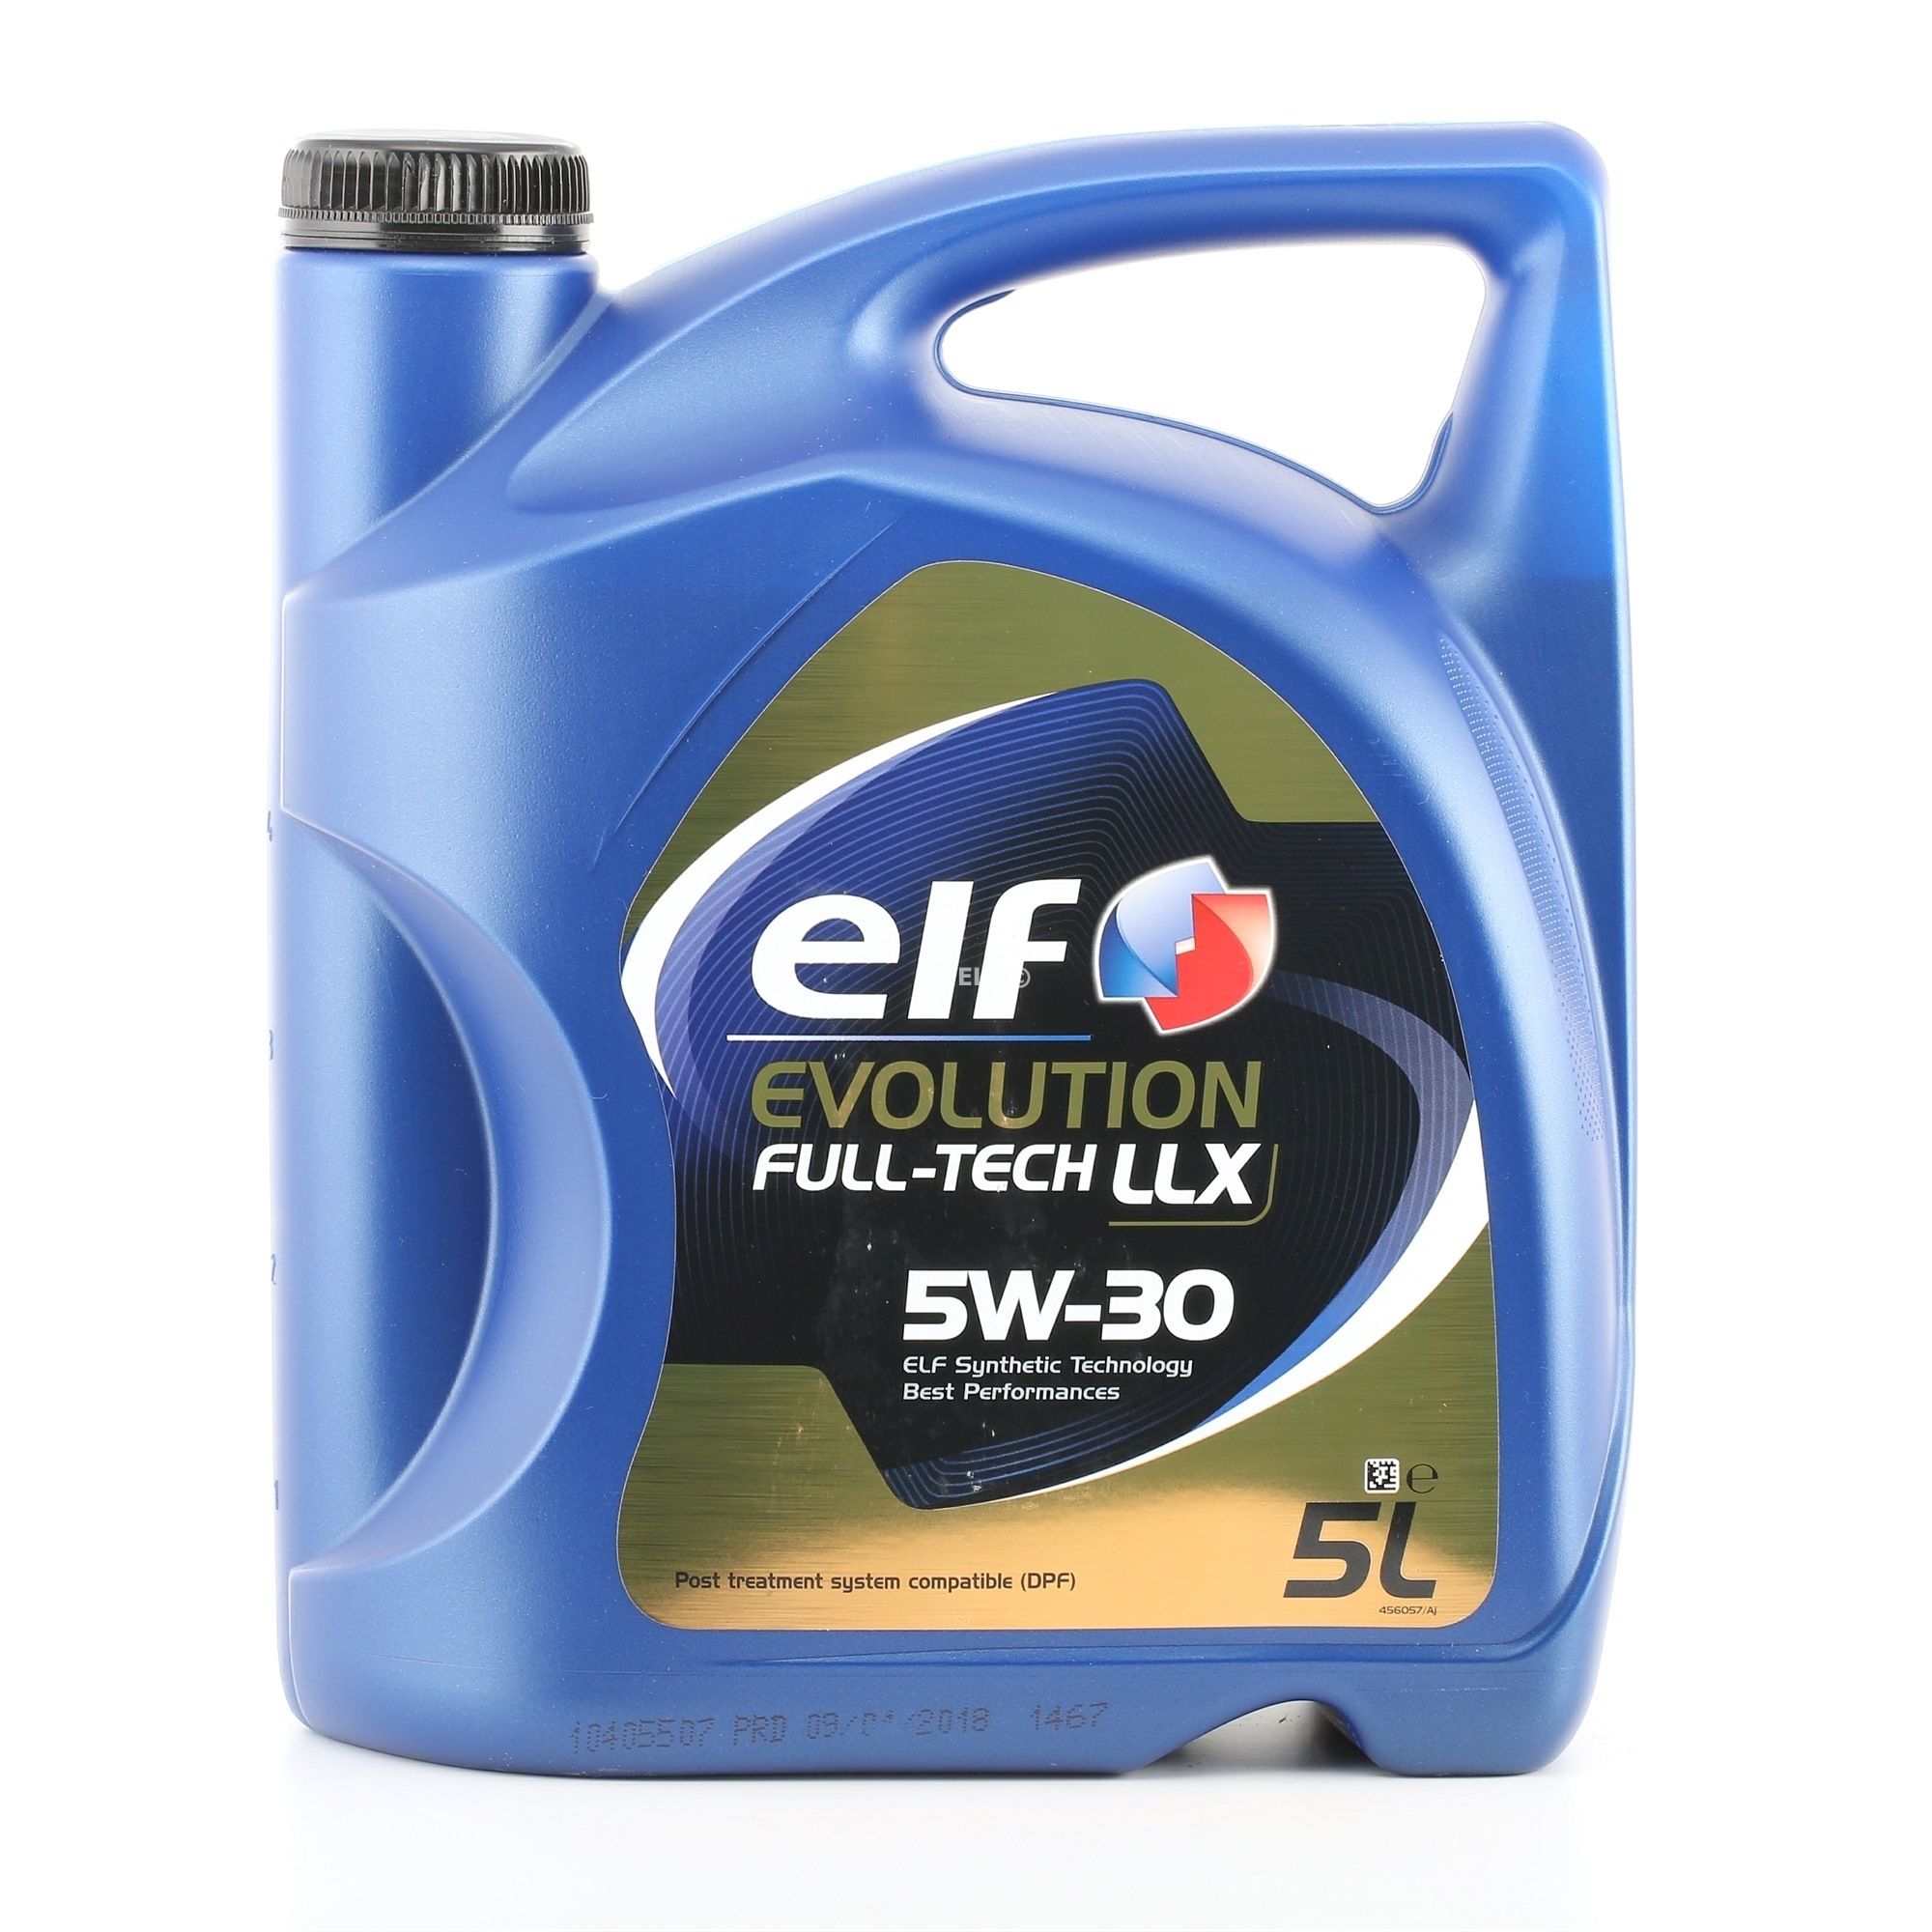 ELF Evolution, Full-Tech LLX 2194890 Engine oil 5W-30, 5l, Synthetic Oil